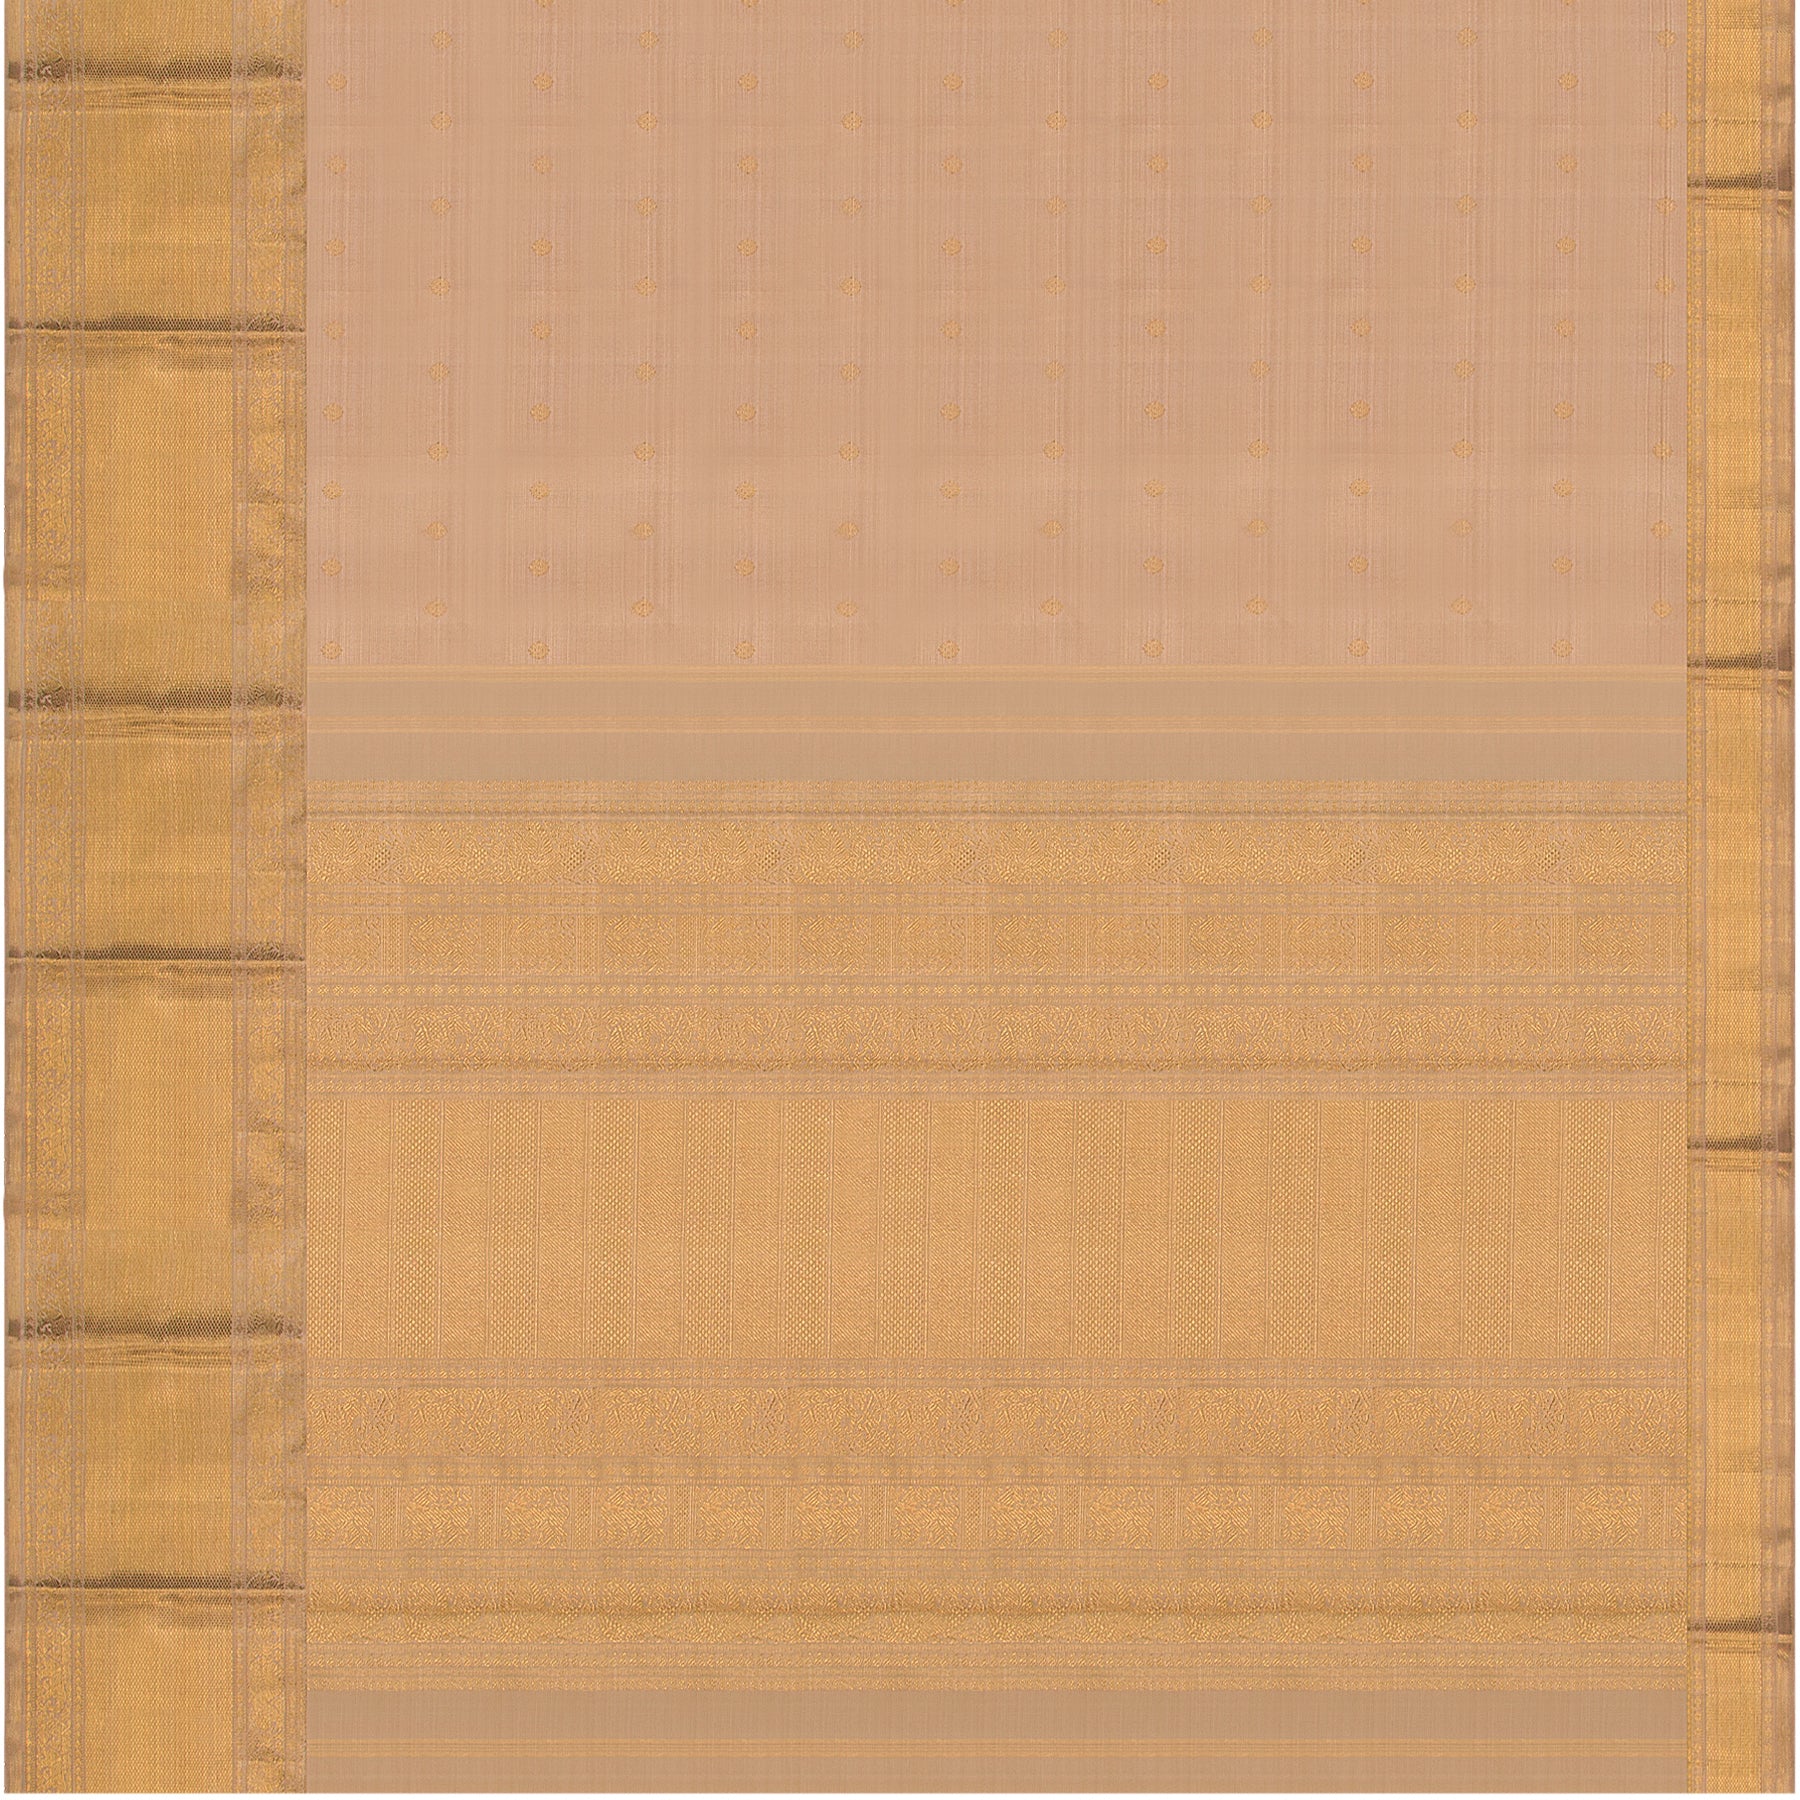 Kanakavalli Kanjivaram Silk Sari 22-110-HS001-09498 - Full View